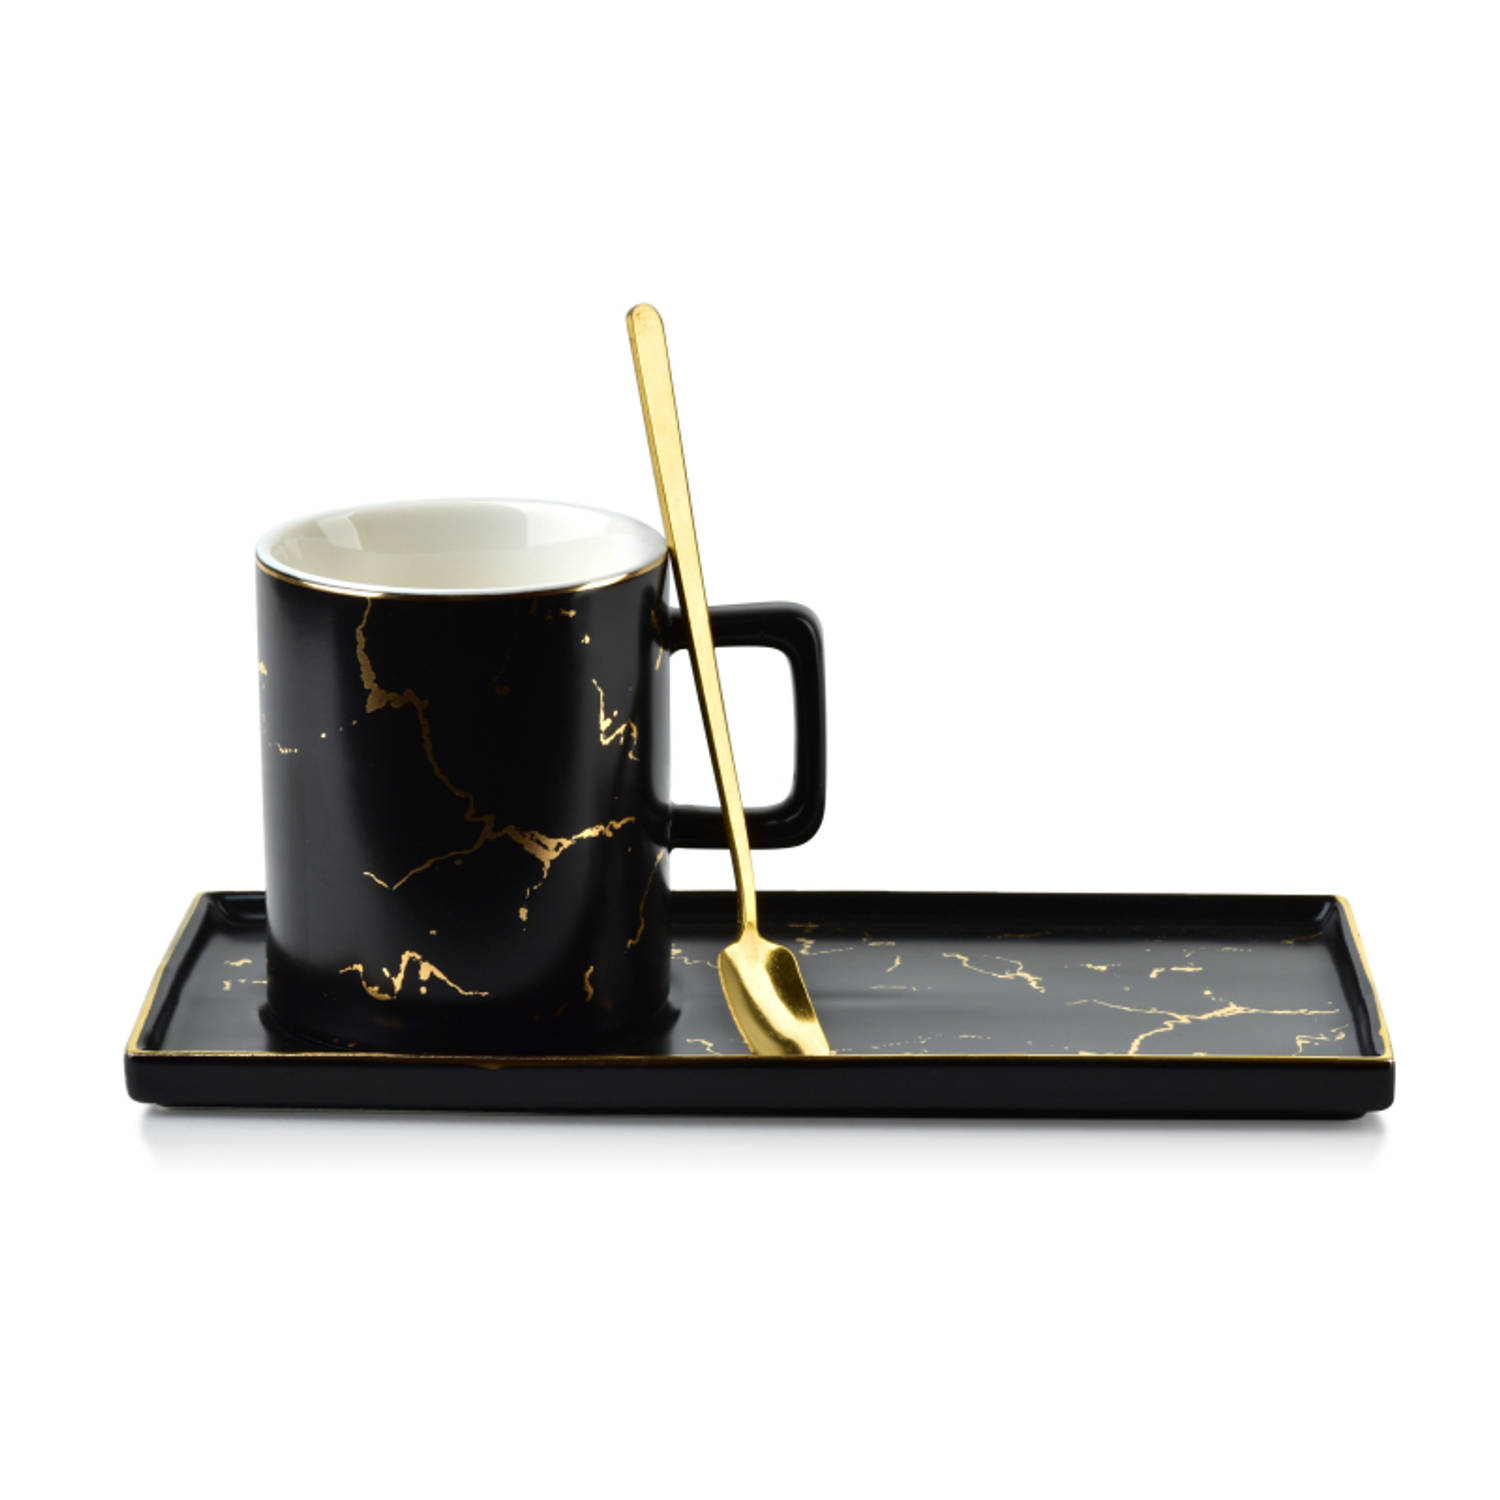 Affekdesign Odette porseleinen mok en schotel met marmer look en lepel 250ml zwart - inclusief uniek gouden lepel en bijpassende schotel - koffiemok - theemok - exclusieve en elega